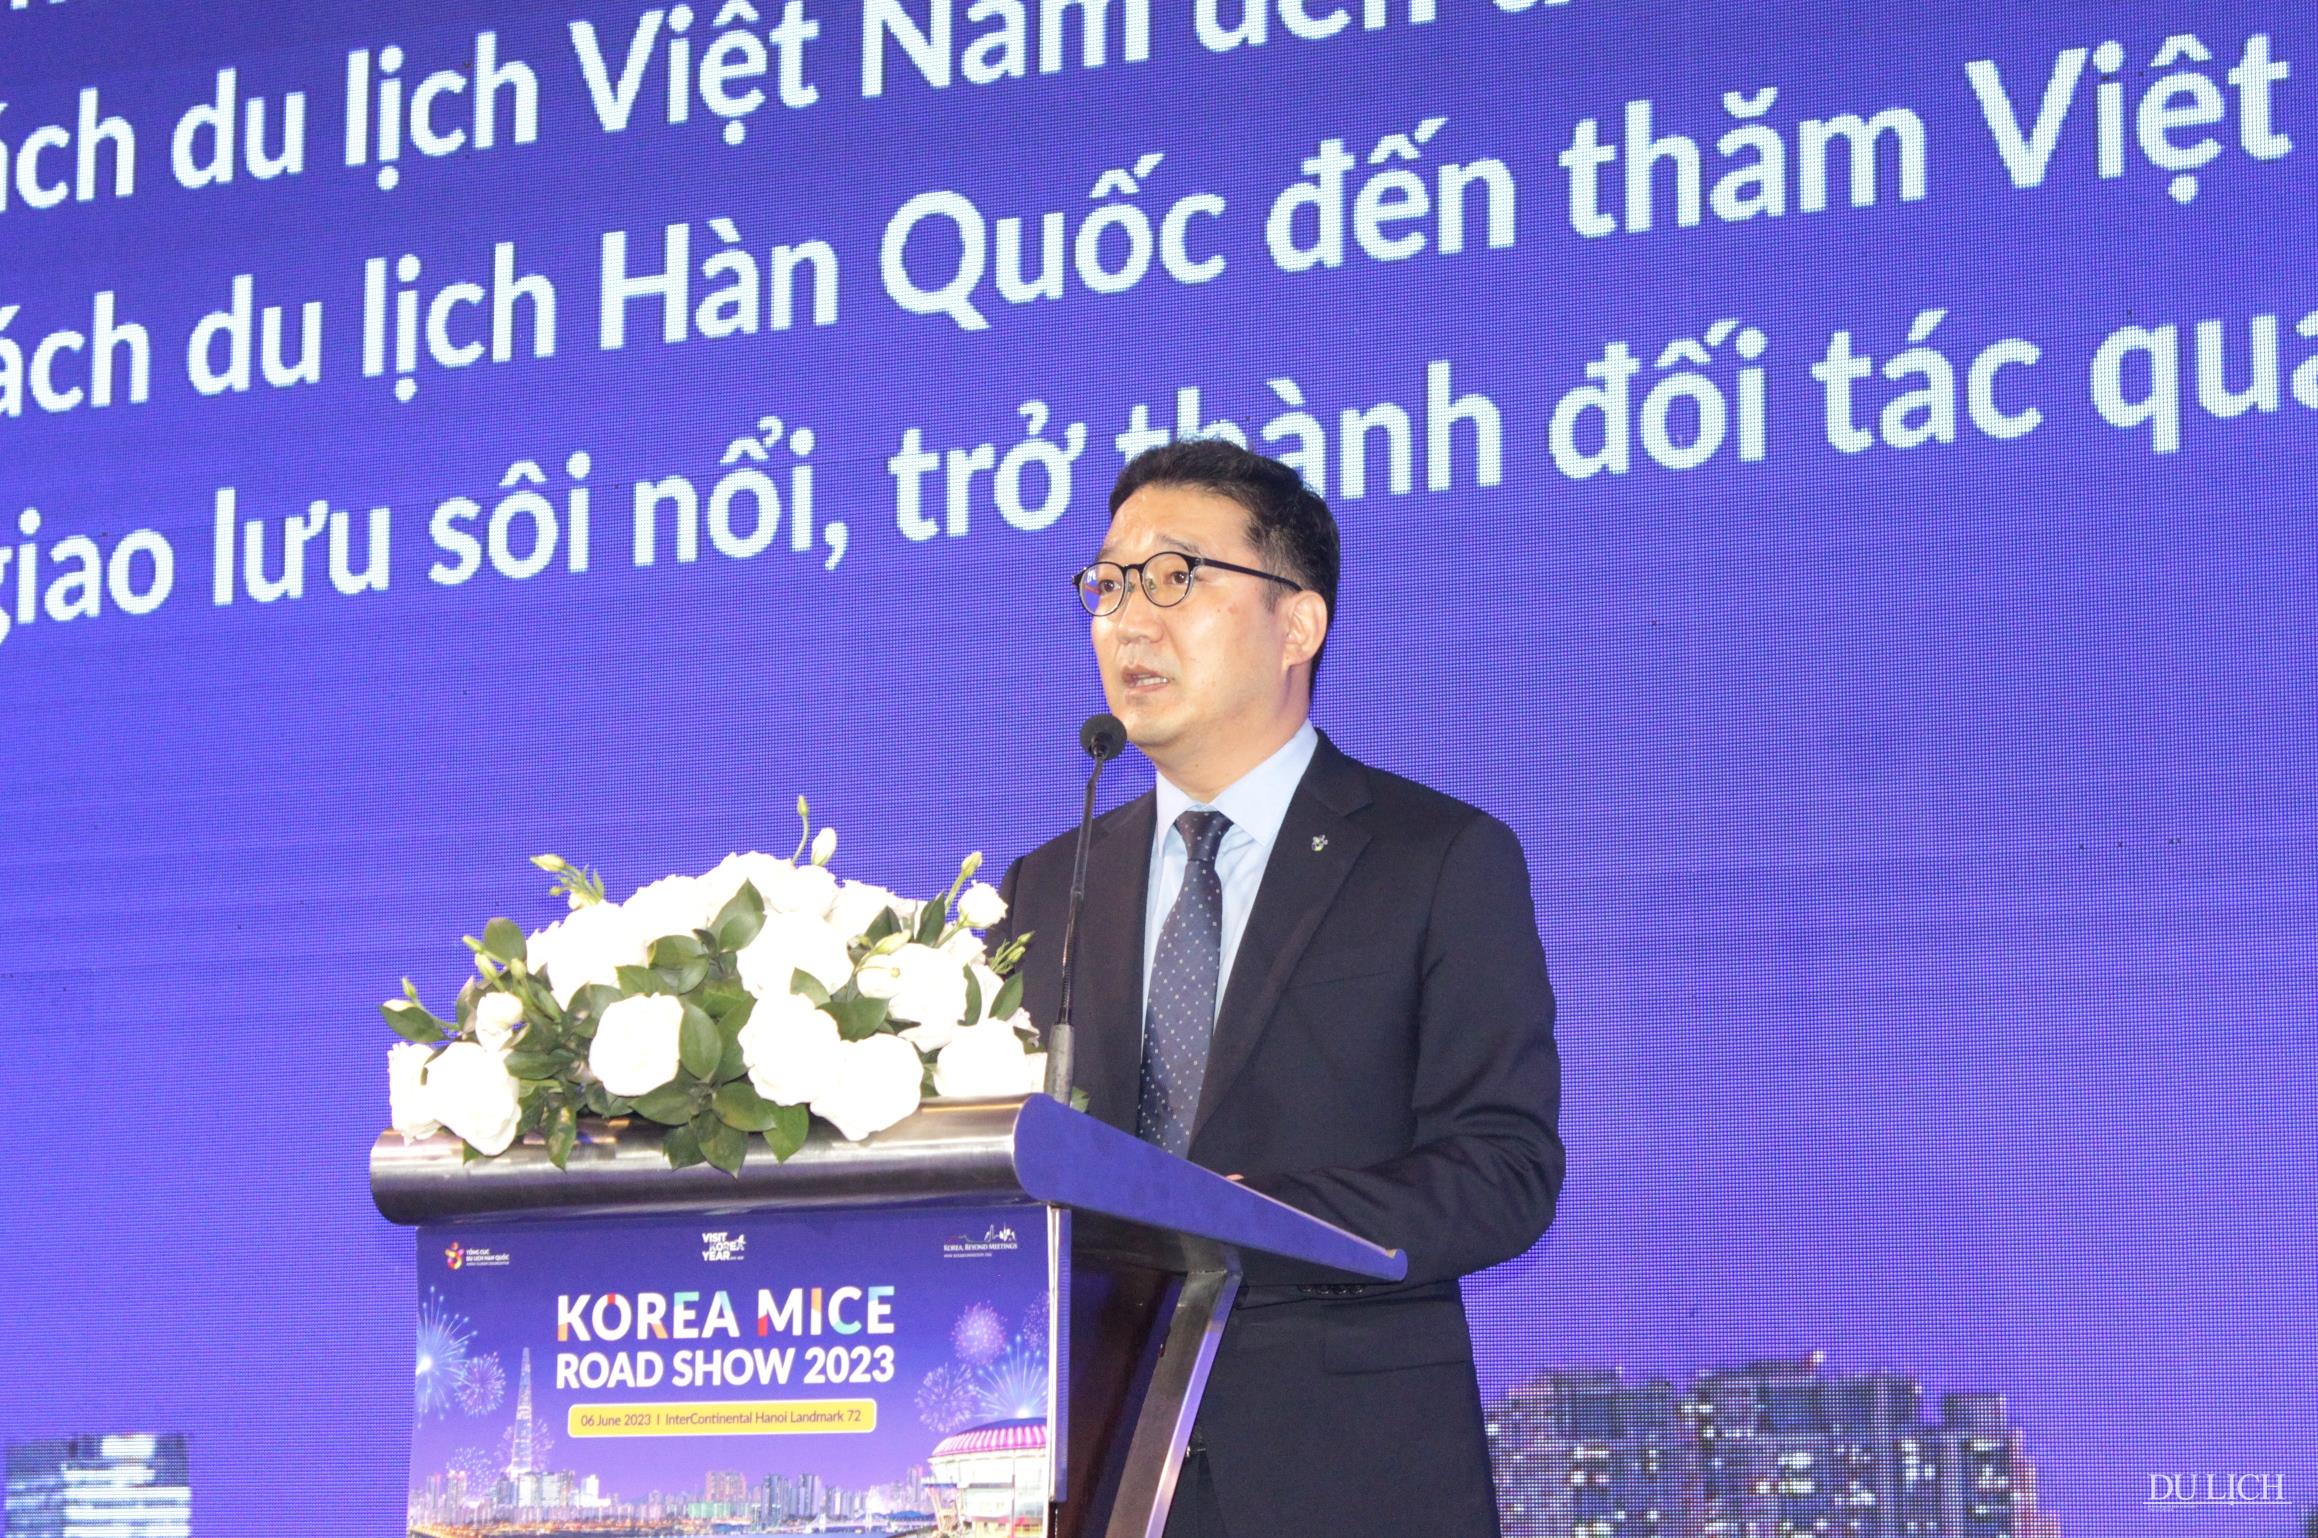  Trưởng đại diện Văn phòng Tổng cục Du lịch Hàn Quốc tại Việt Nam Lee Jae Hoon phát biểu chào mừng